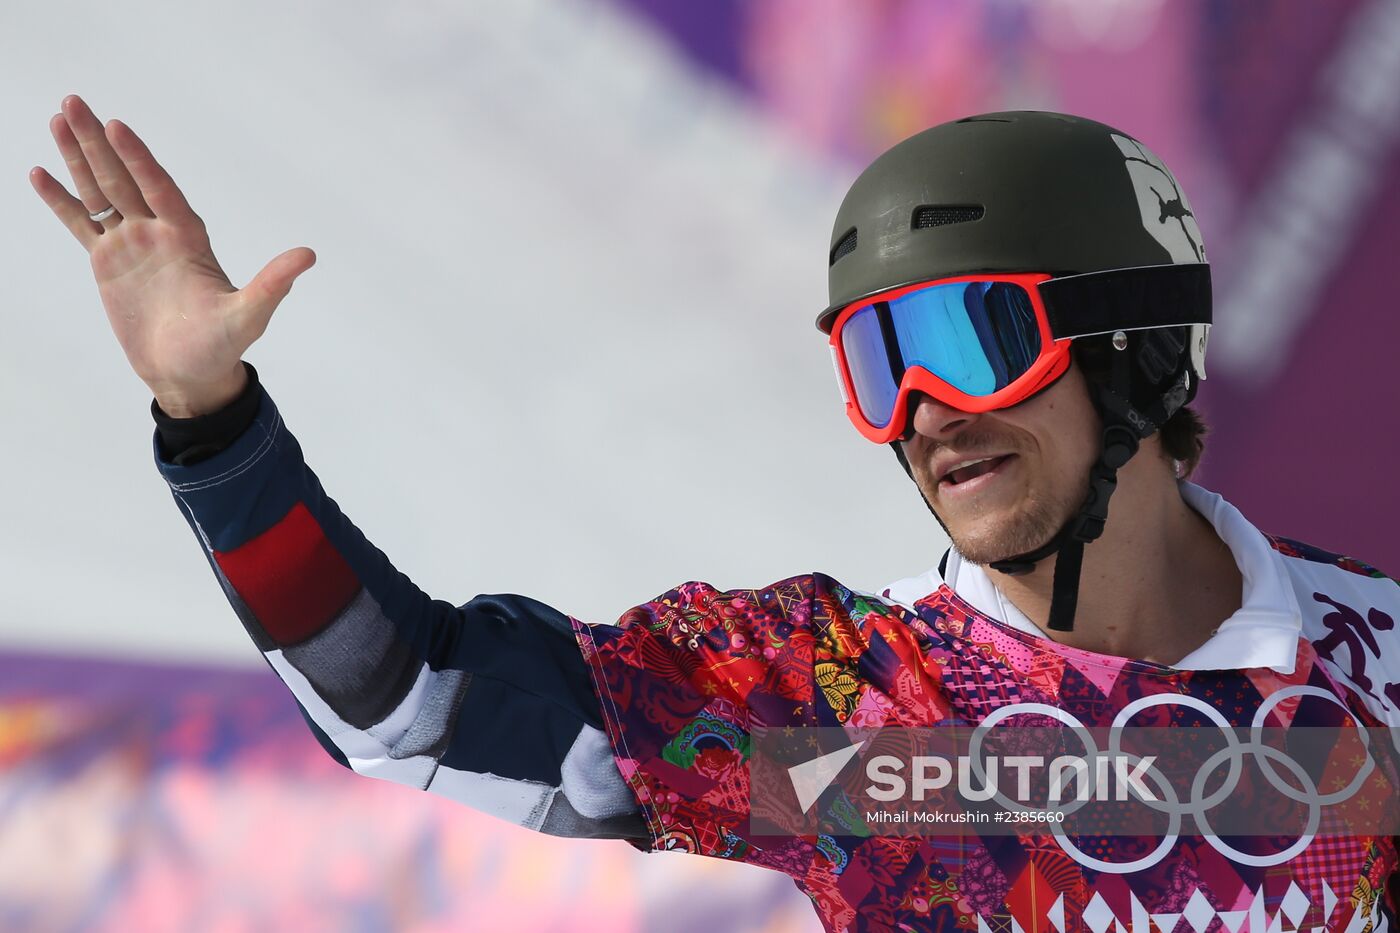 2014 Winter Olympics. Snowboarding. Men. Parallel slalom